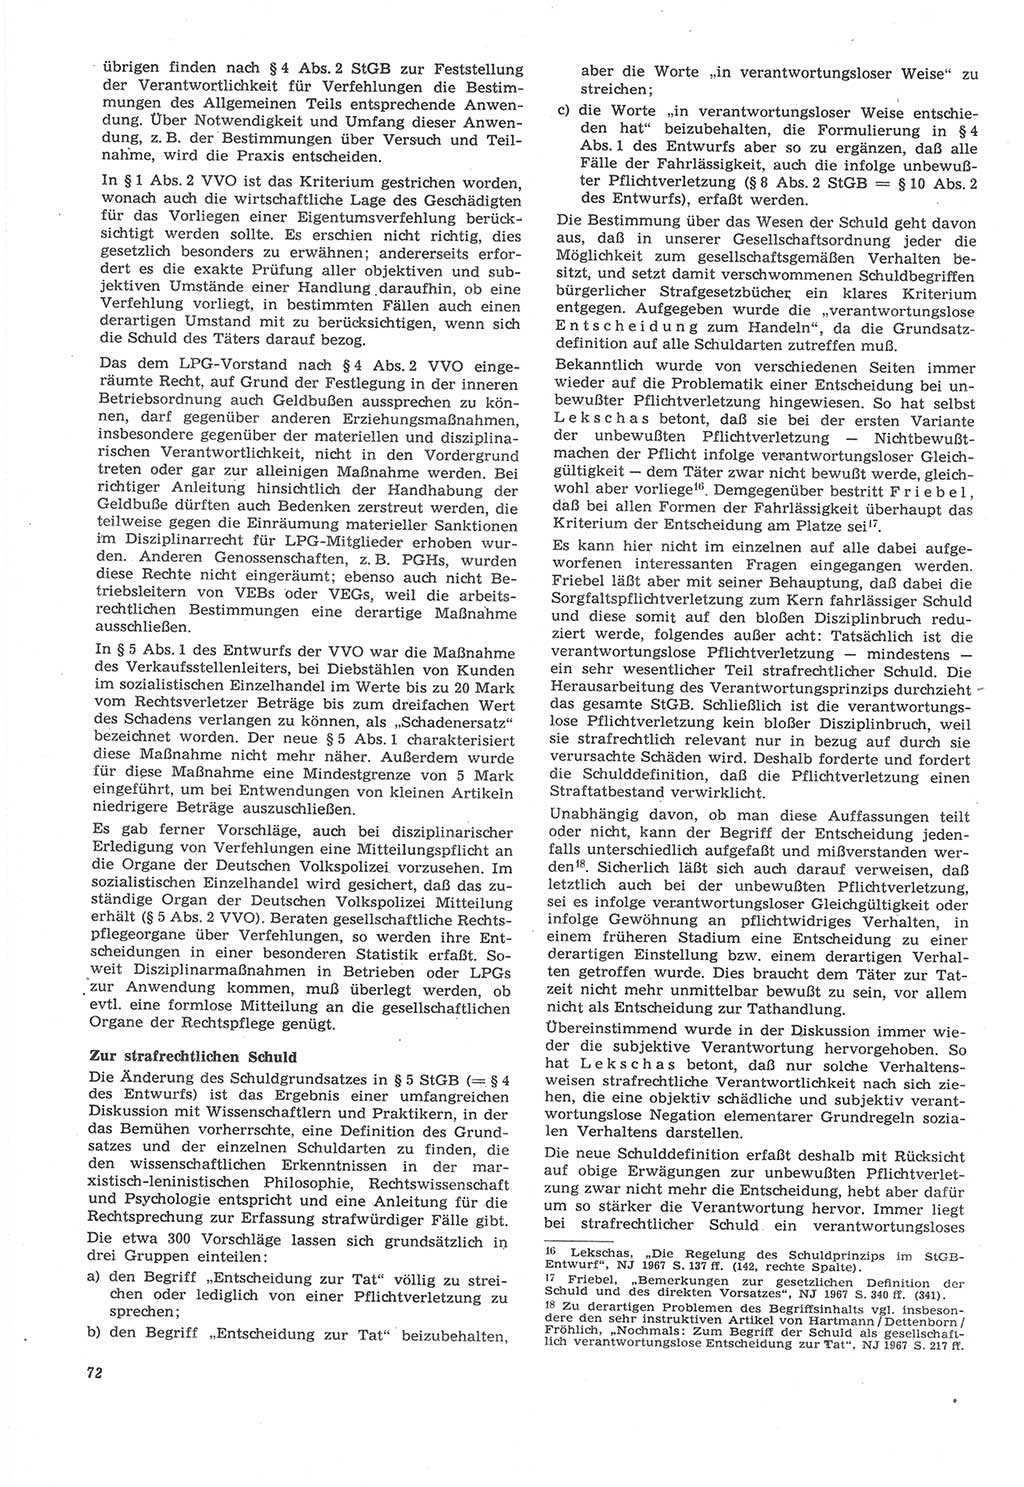 Neue Justiz (NJ), Zeitschrift für Recht und Rechtswissenschaft [Deutsche Demokratische Republik (DDR)], 22. Jahrgang 1968, Seite 72 (NJ DDR 1968, S. 72)